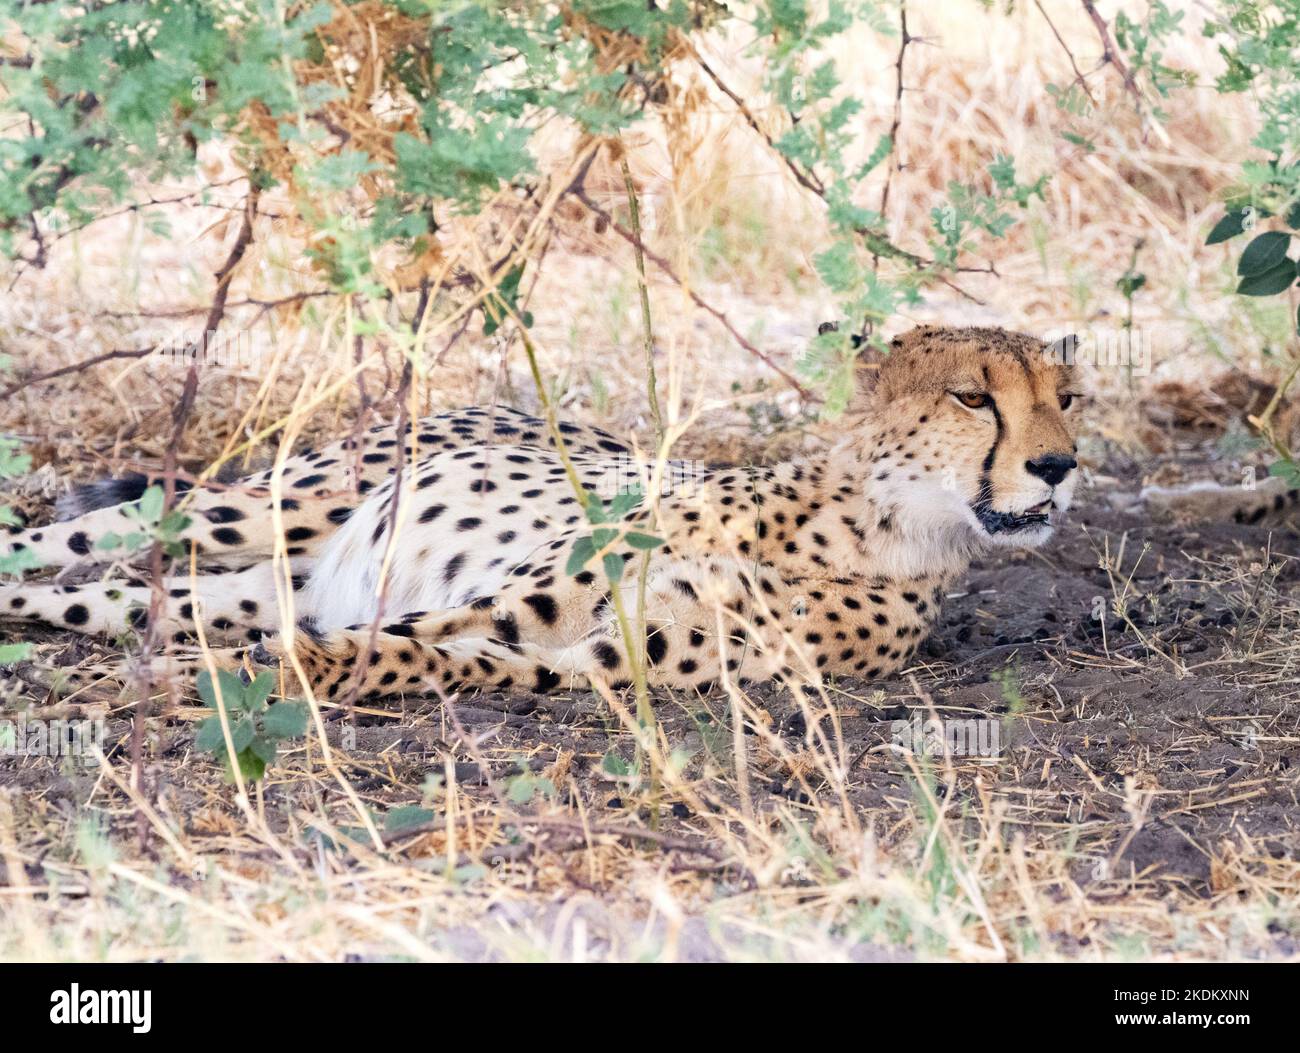 Guépard mâle adulte, Acinonyx jubatus dans la nature, parc national de Chobe, Botswana Afrique. Espèces en voie de disparition. Grande Cat Banque D'Images